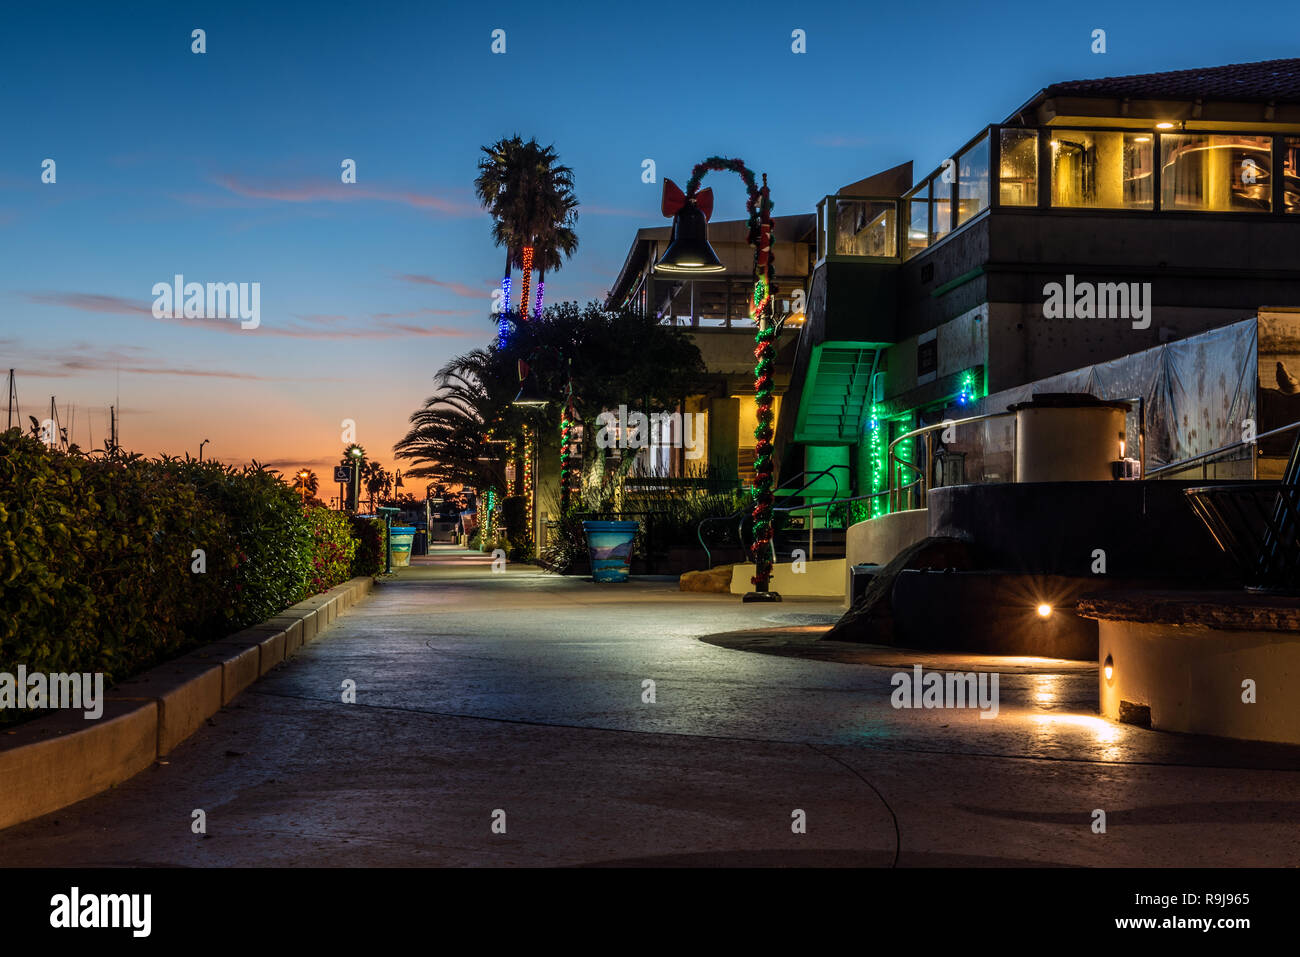 Le luci di Natale avvolto intorno alle lampade e palme sotto alba cielo lungo Ventura Harbor negozi in California, Stati Uniti d'America il 24 dicembre 2018. Foto Stock